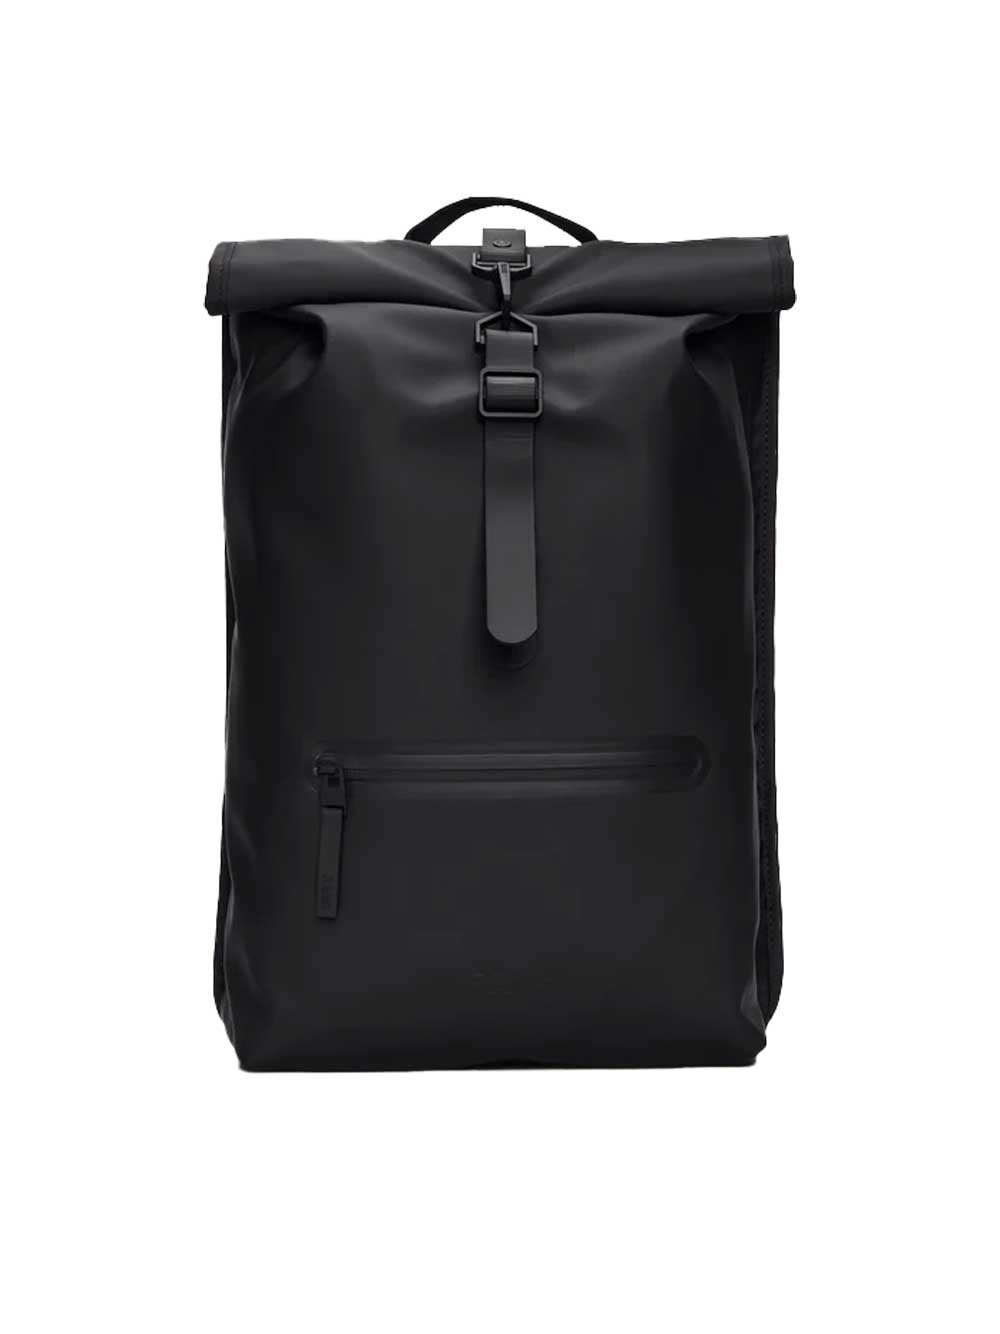 Black Rolltop Backpack